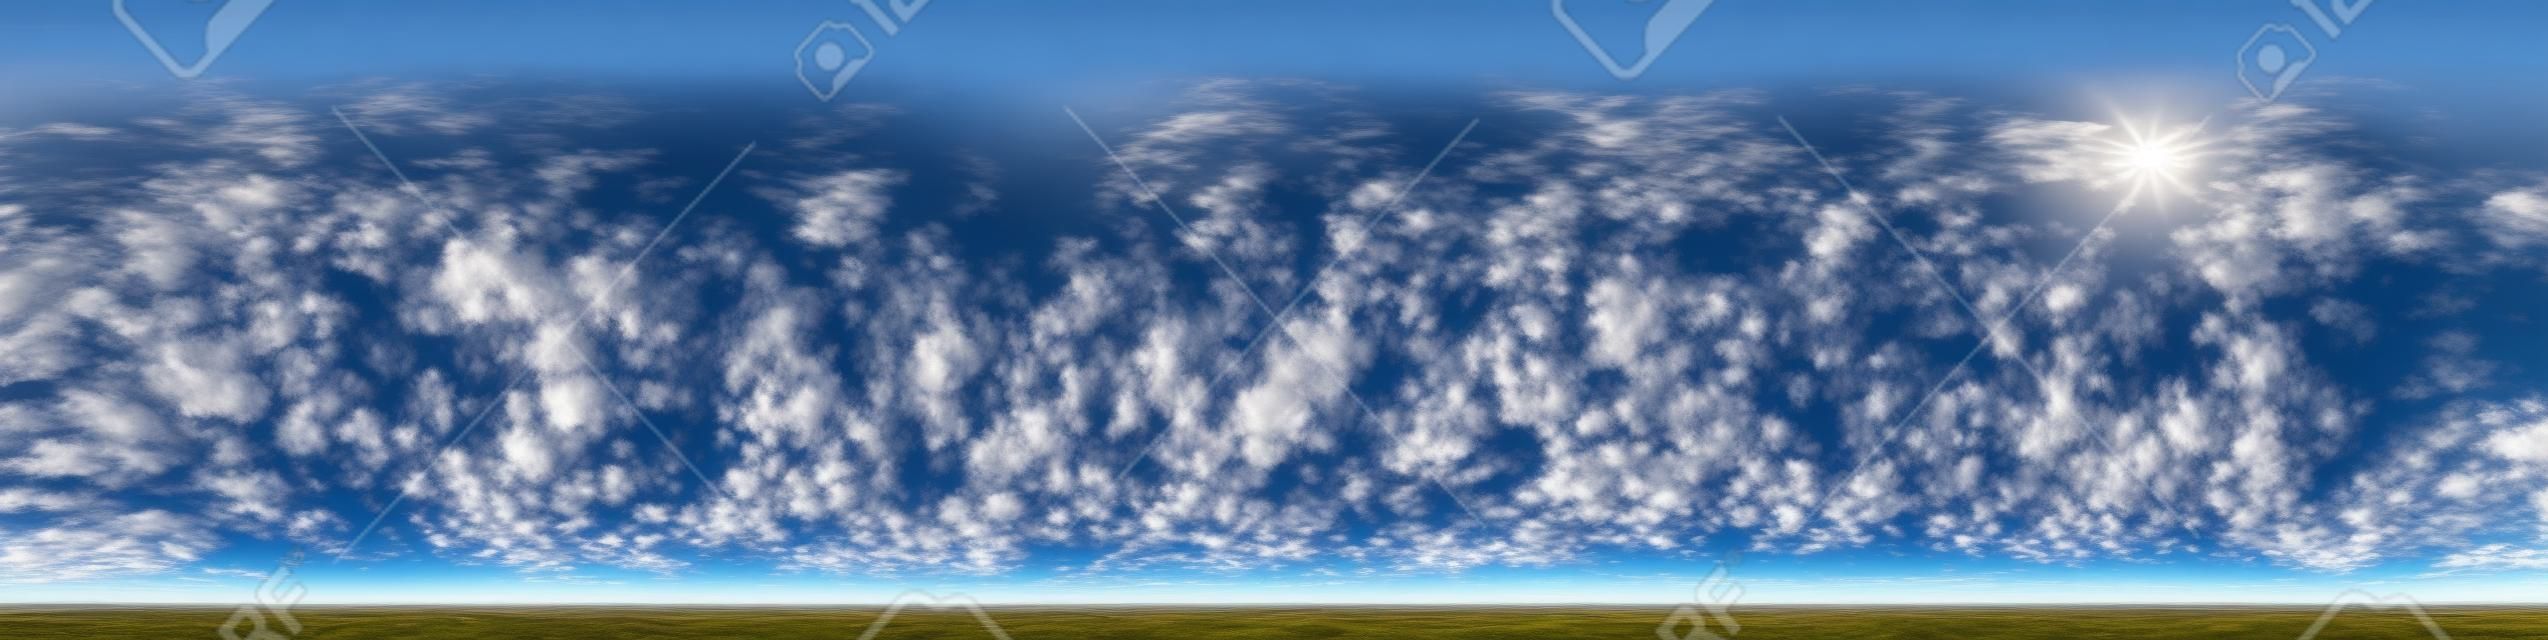 błękitne niebo z pięknymi niesamowitymi chmurami. Płynna panorama HDR 360 stopni kąta widzenia z zenitem do użytku w grafice 3D lub tworzeniu gier jako kopuła nieba lub edycja strzału z drona